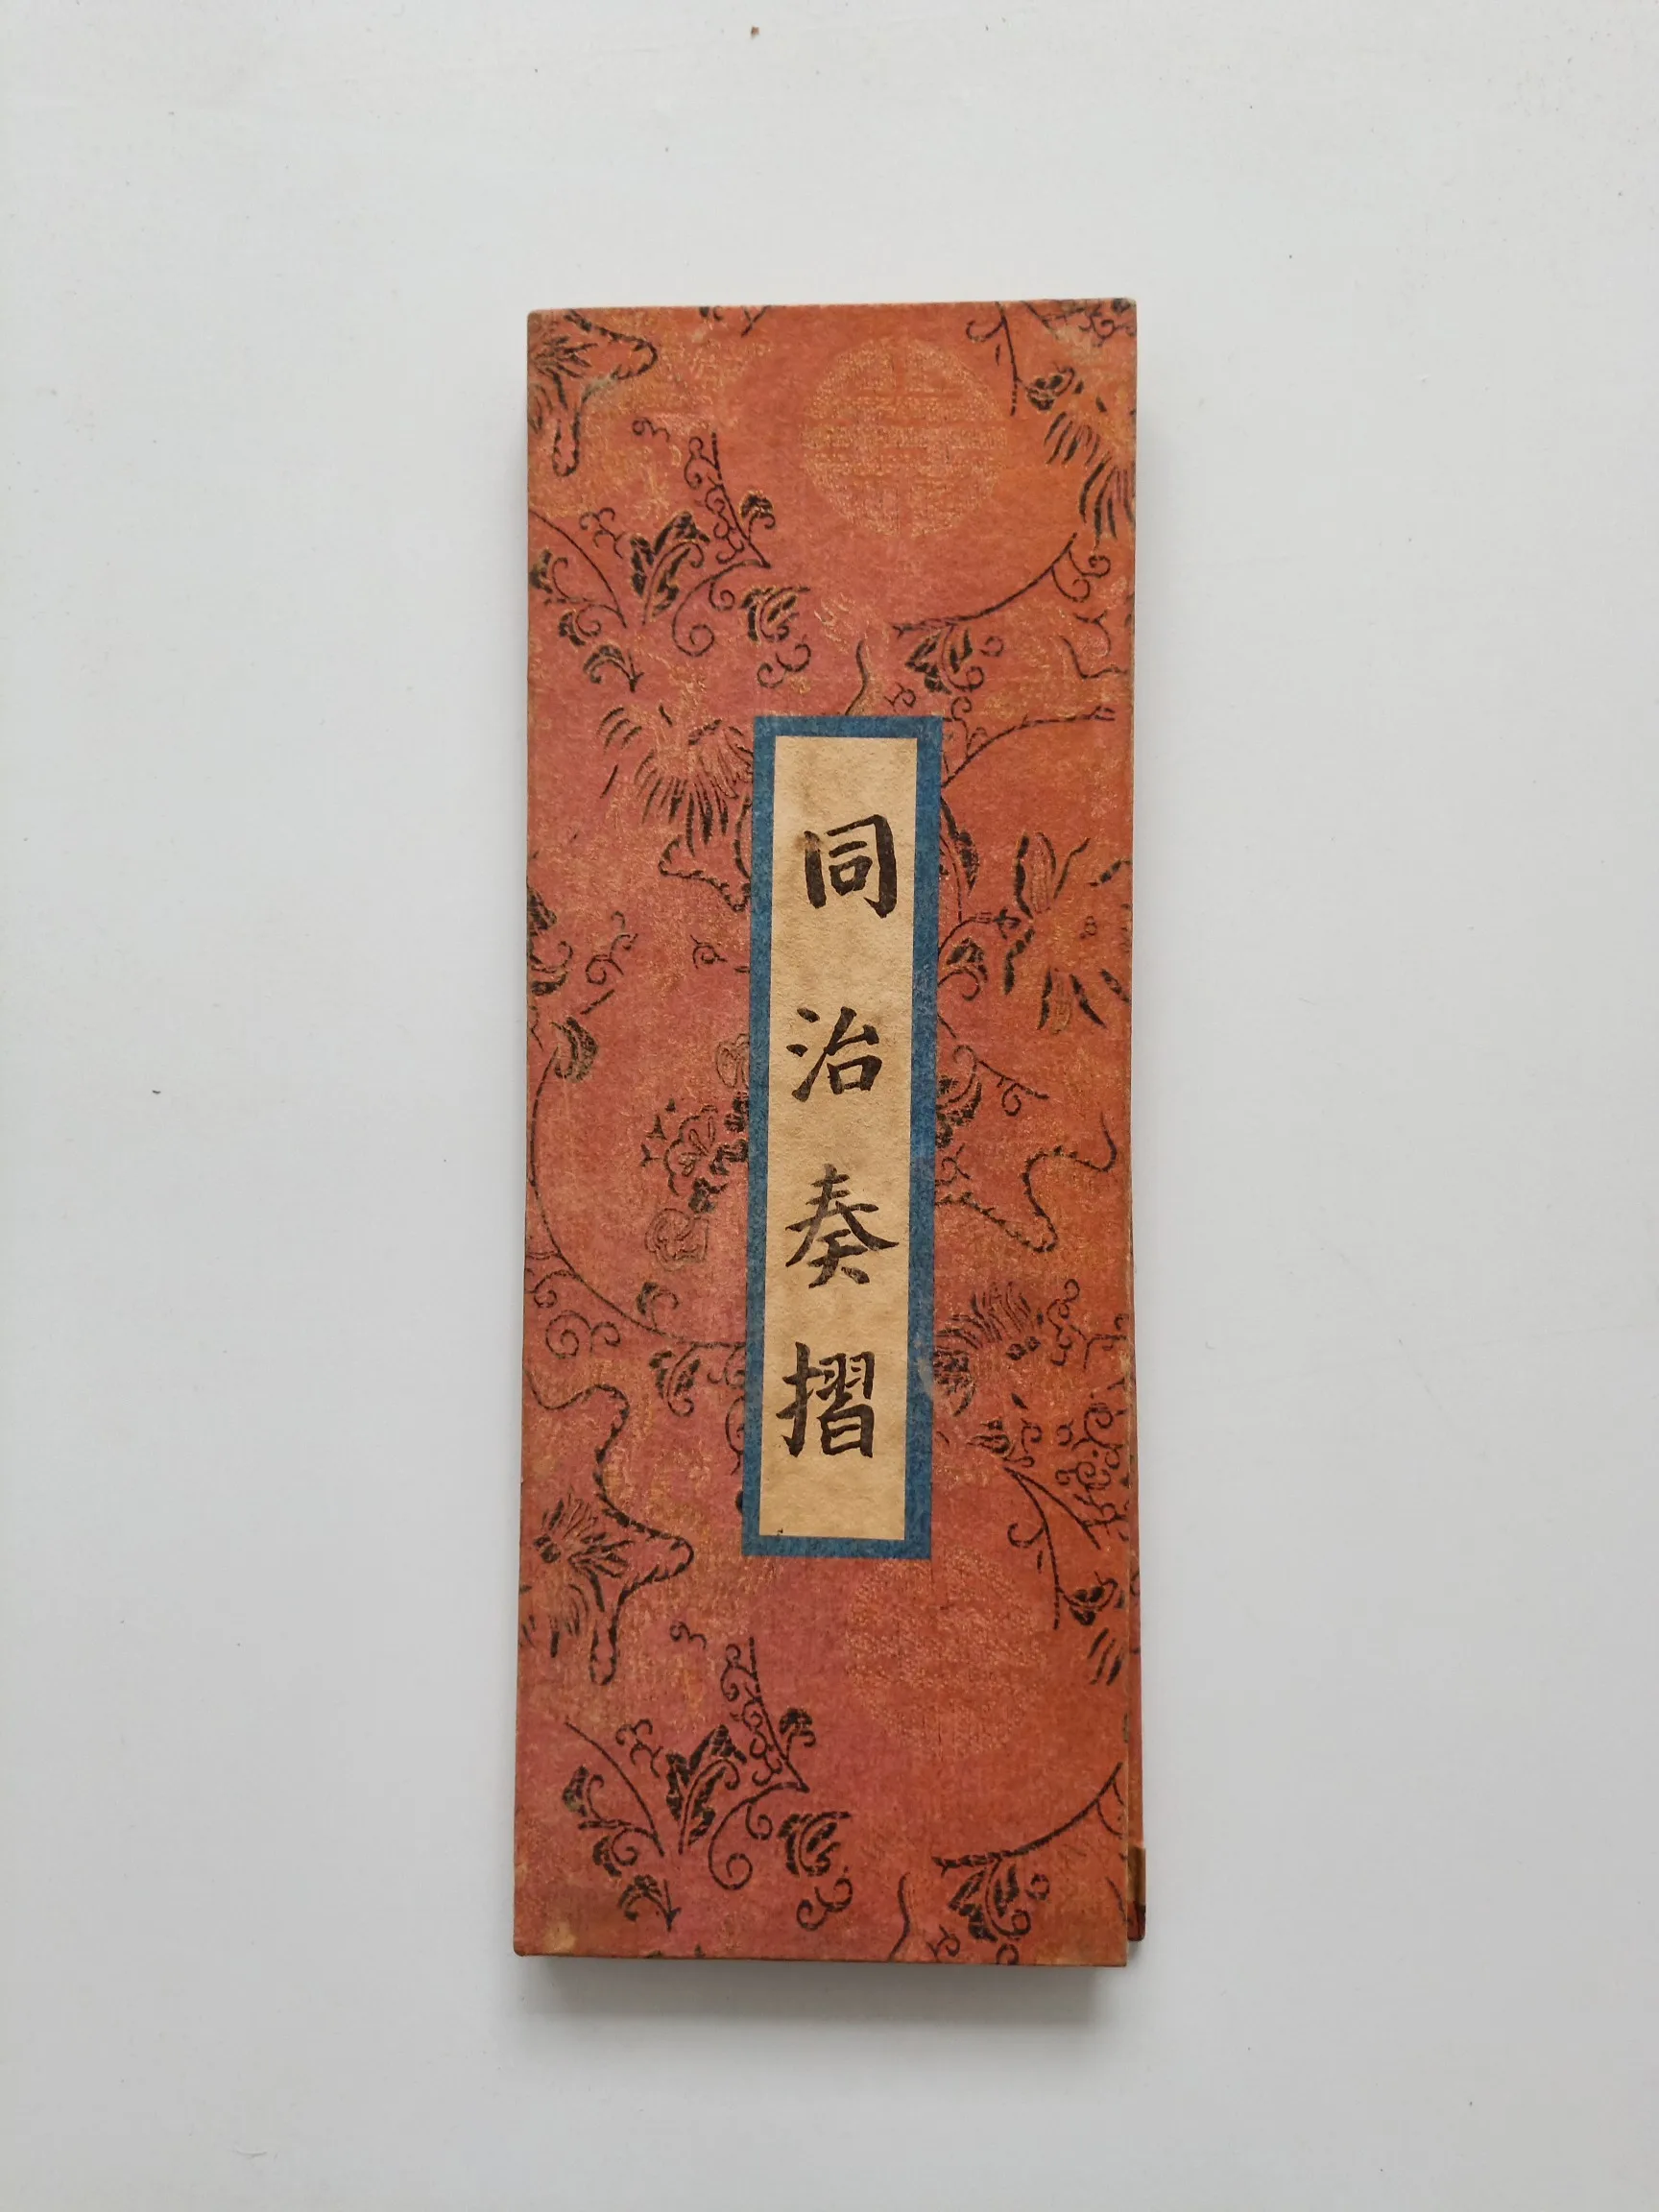 

Китайская античная коллекция, каллиграфия и живопись, император тунчжи династии Цин, подпись, памятные декоративные картины